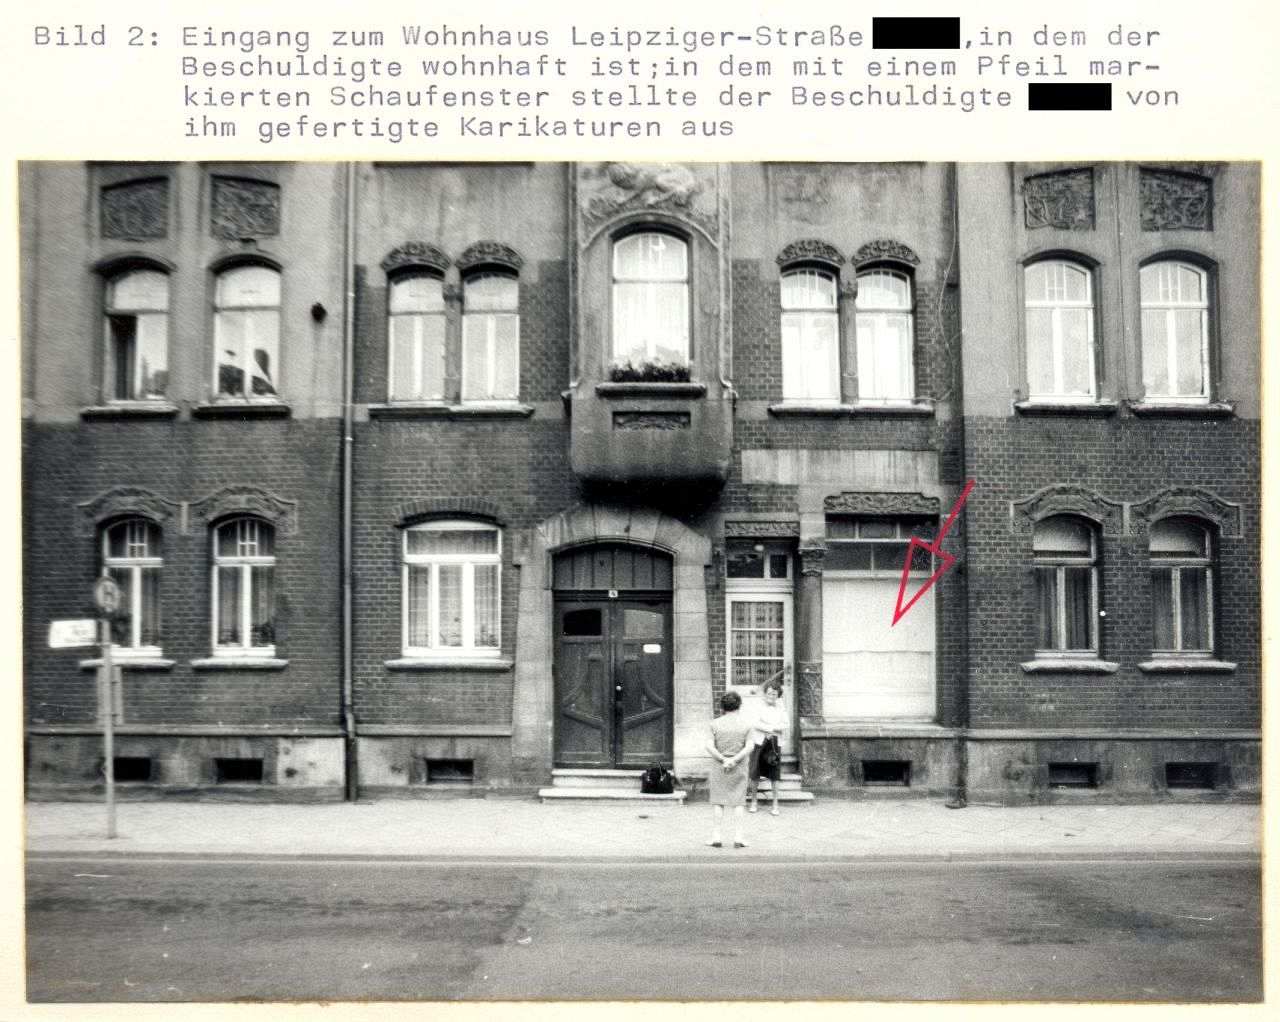 Hausfassade mit Fenstern, Erdgeschoss und erstem Stock. In der Mitte die Eingangstür. Rechts davon ein größeres Fenster, das von innen verhängt ist. Ein in das Bild eingezeichneter roter Pfeil zeigt auf dieses Fenster. Vor der Tür stehen zwei Frauen.